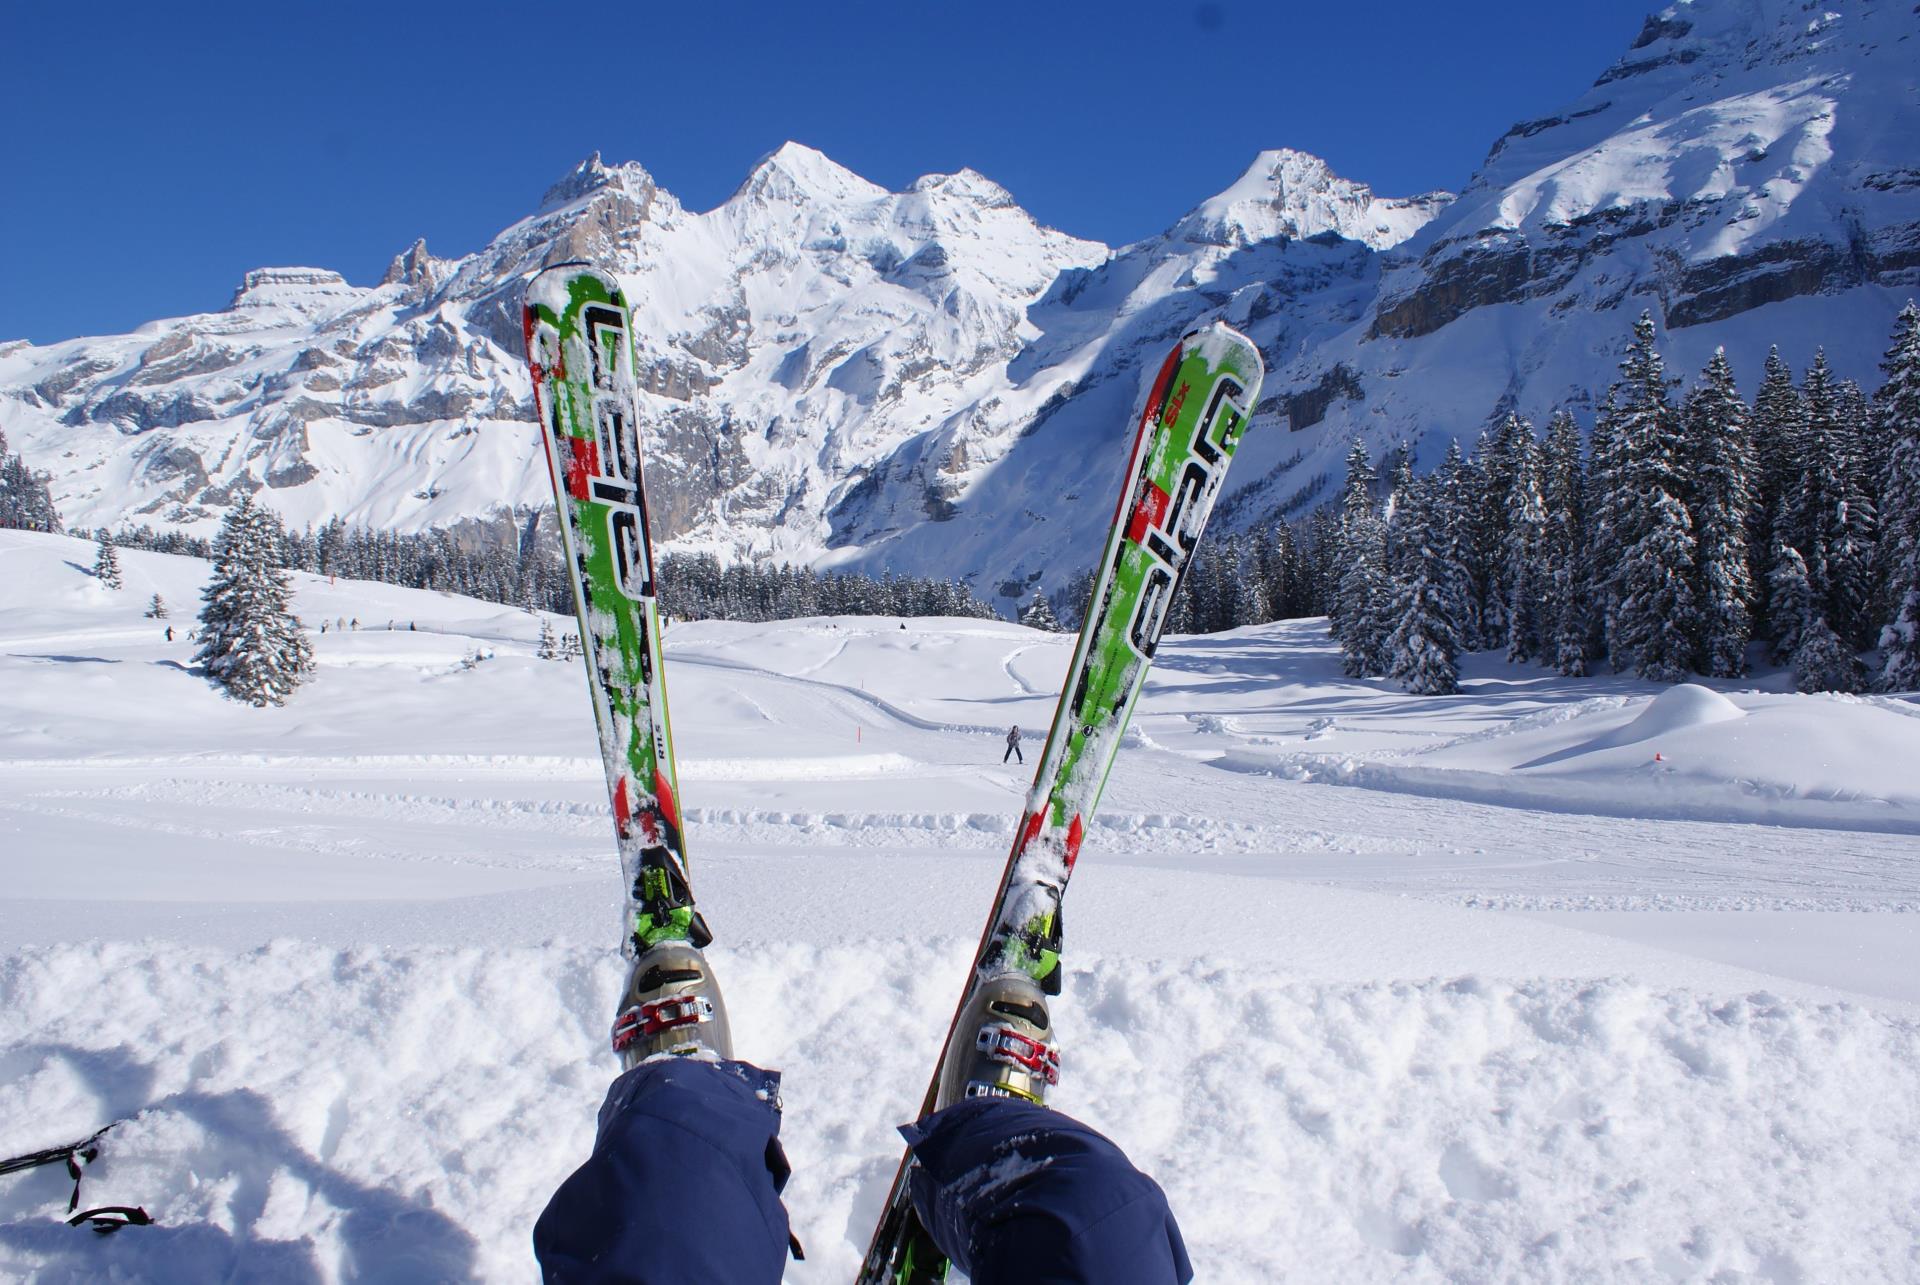 Skifahren am Oeschinen See: Aussicht ins Unesco Welterbe Jungfrau Aletsch mit Blümlisalp